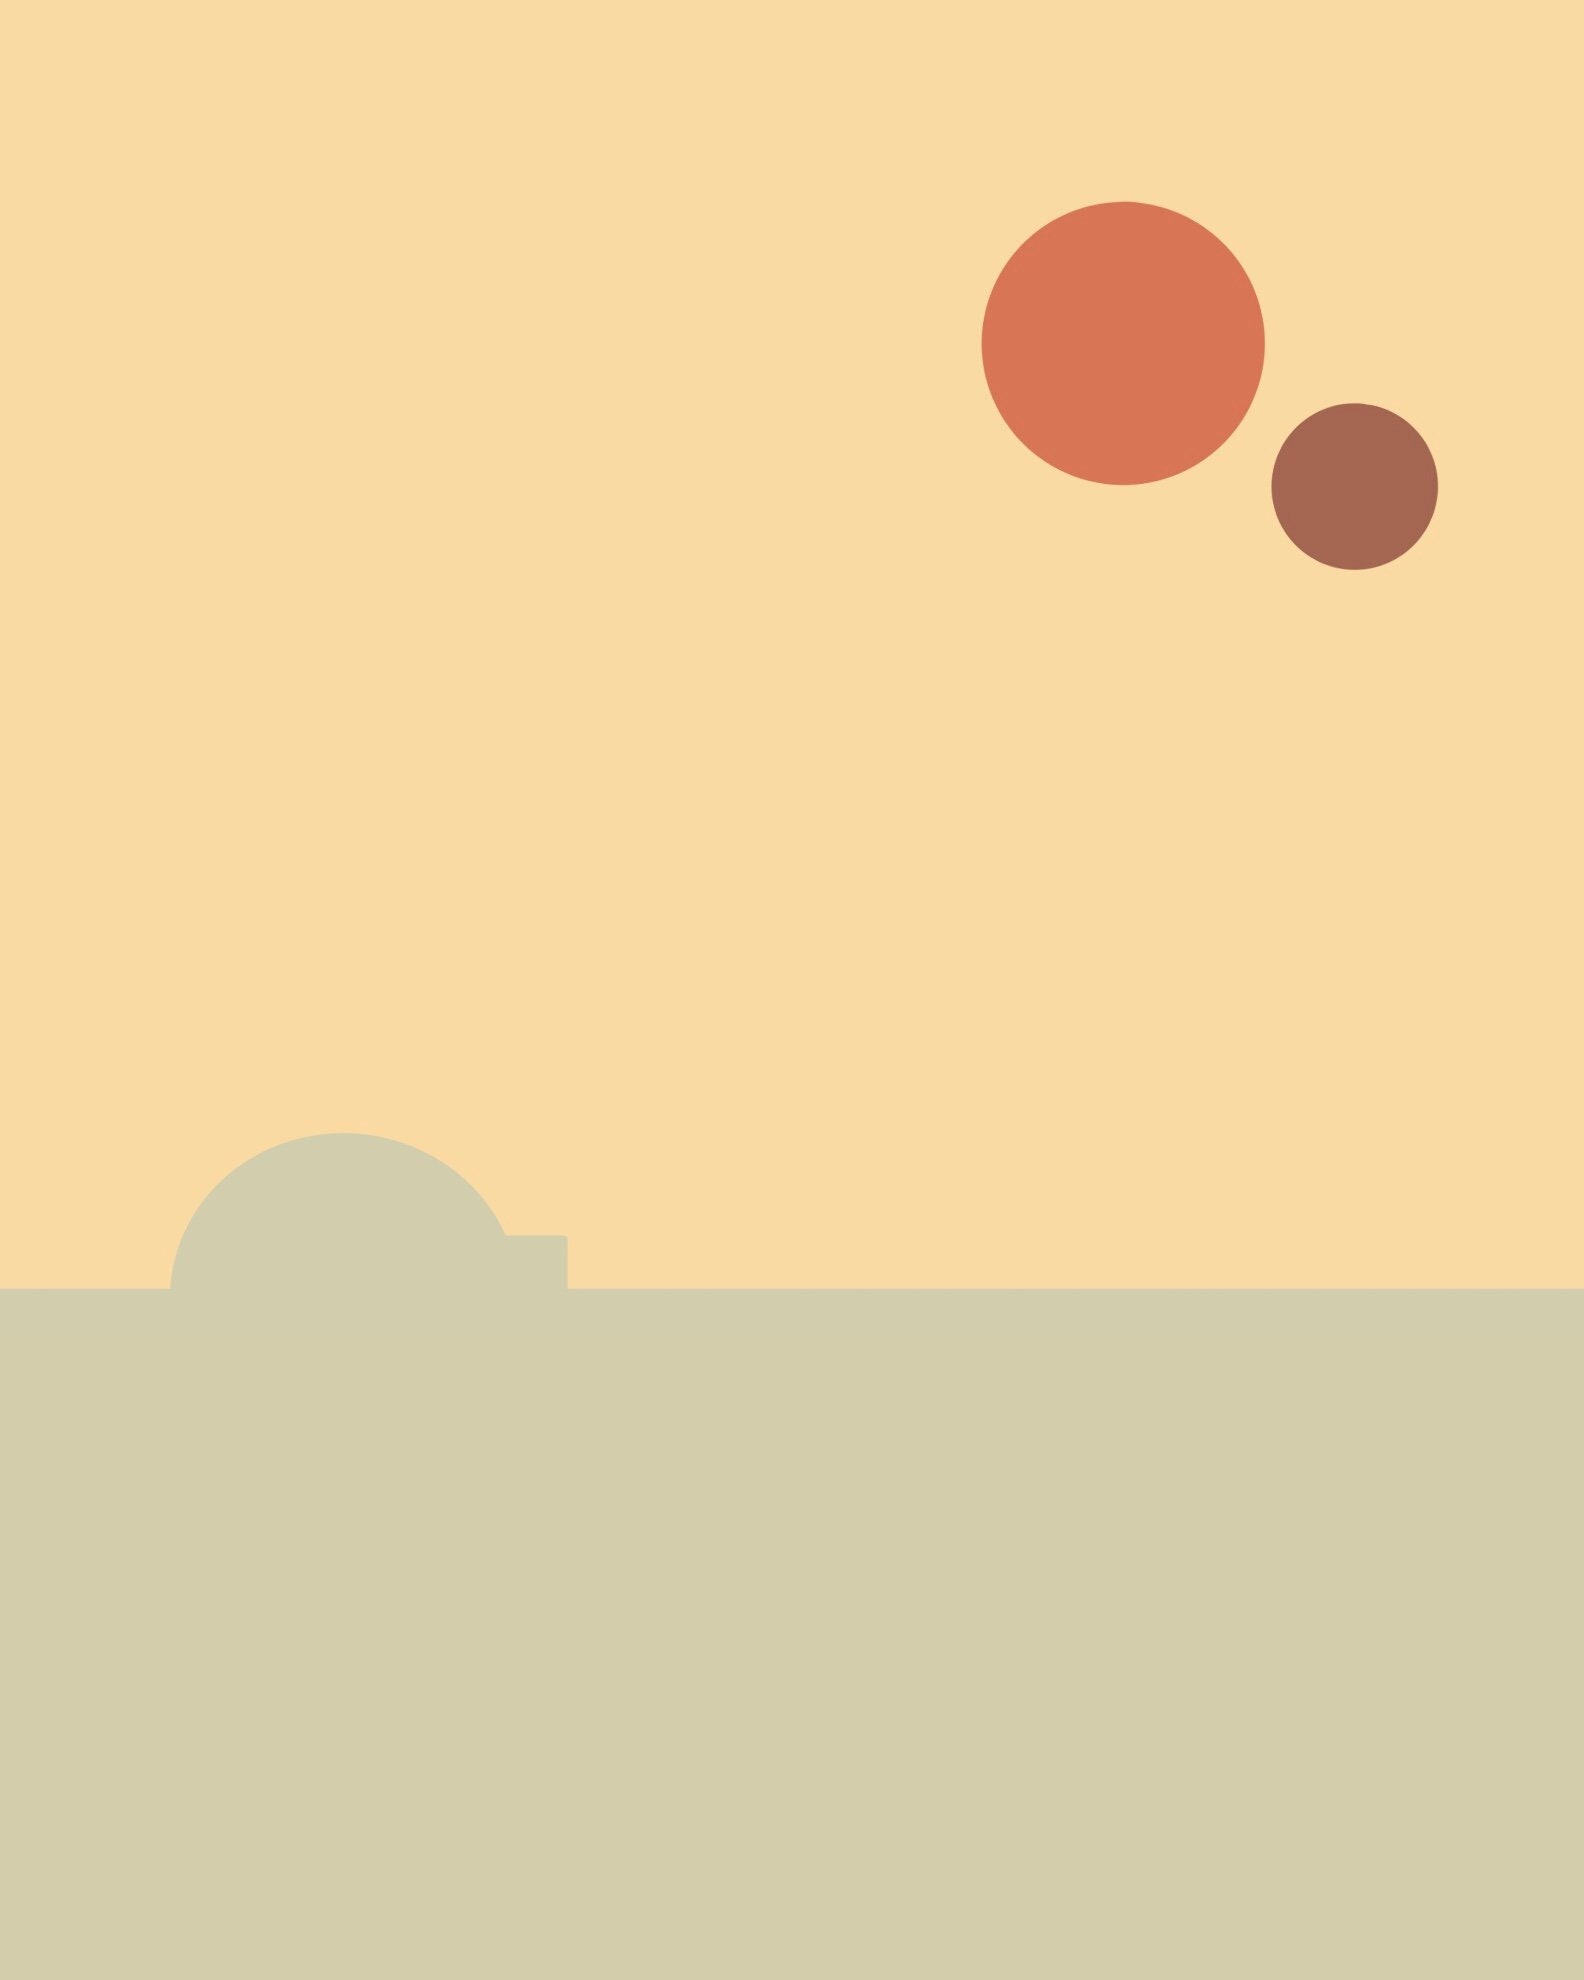 Steam WorkshopStarWars Sunset on Tatooine 4k I